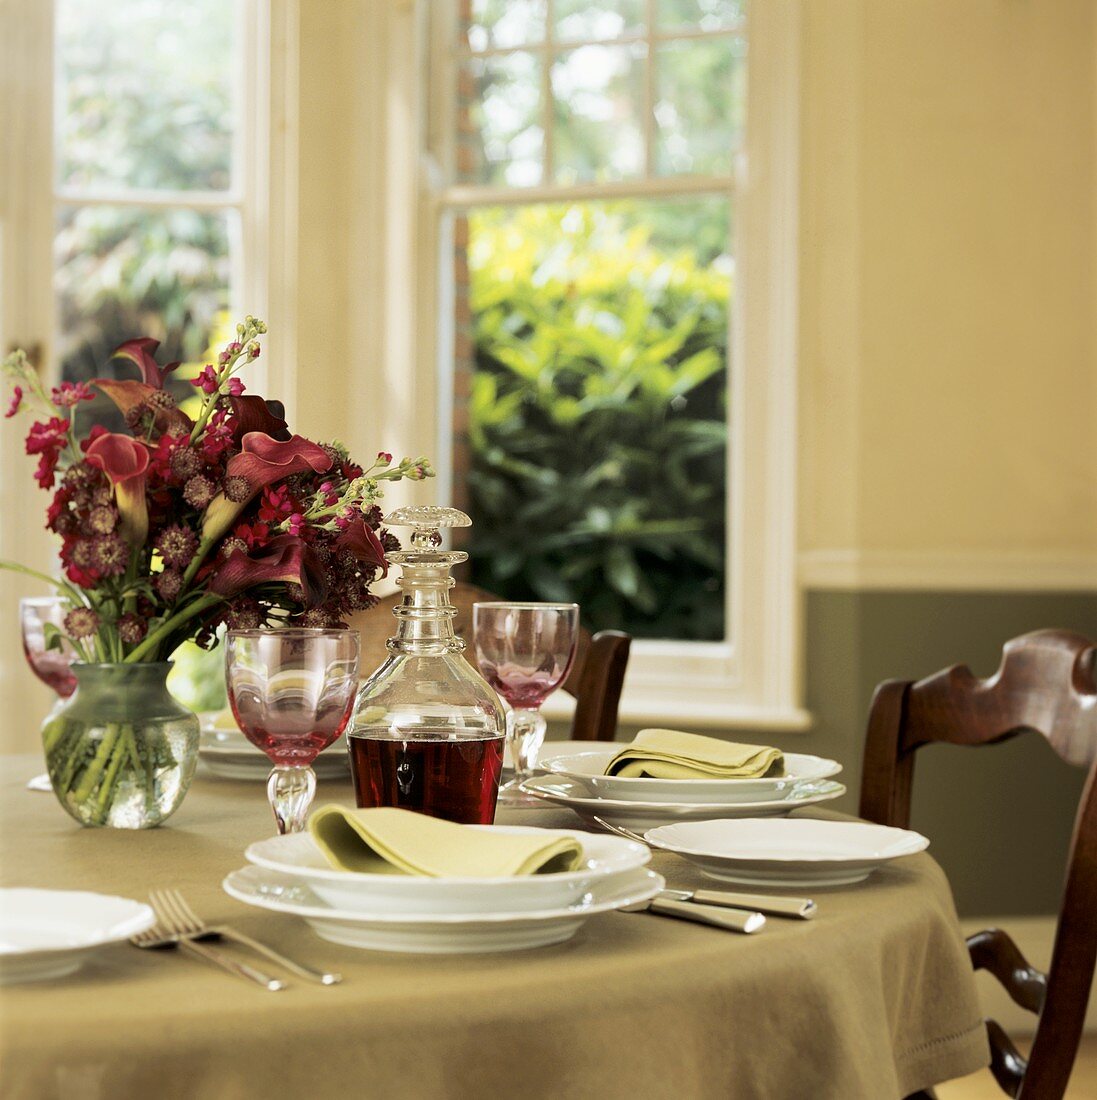 Festlich gedeckter Tisch mit Blumenstrauss und Rotwein